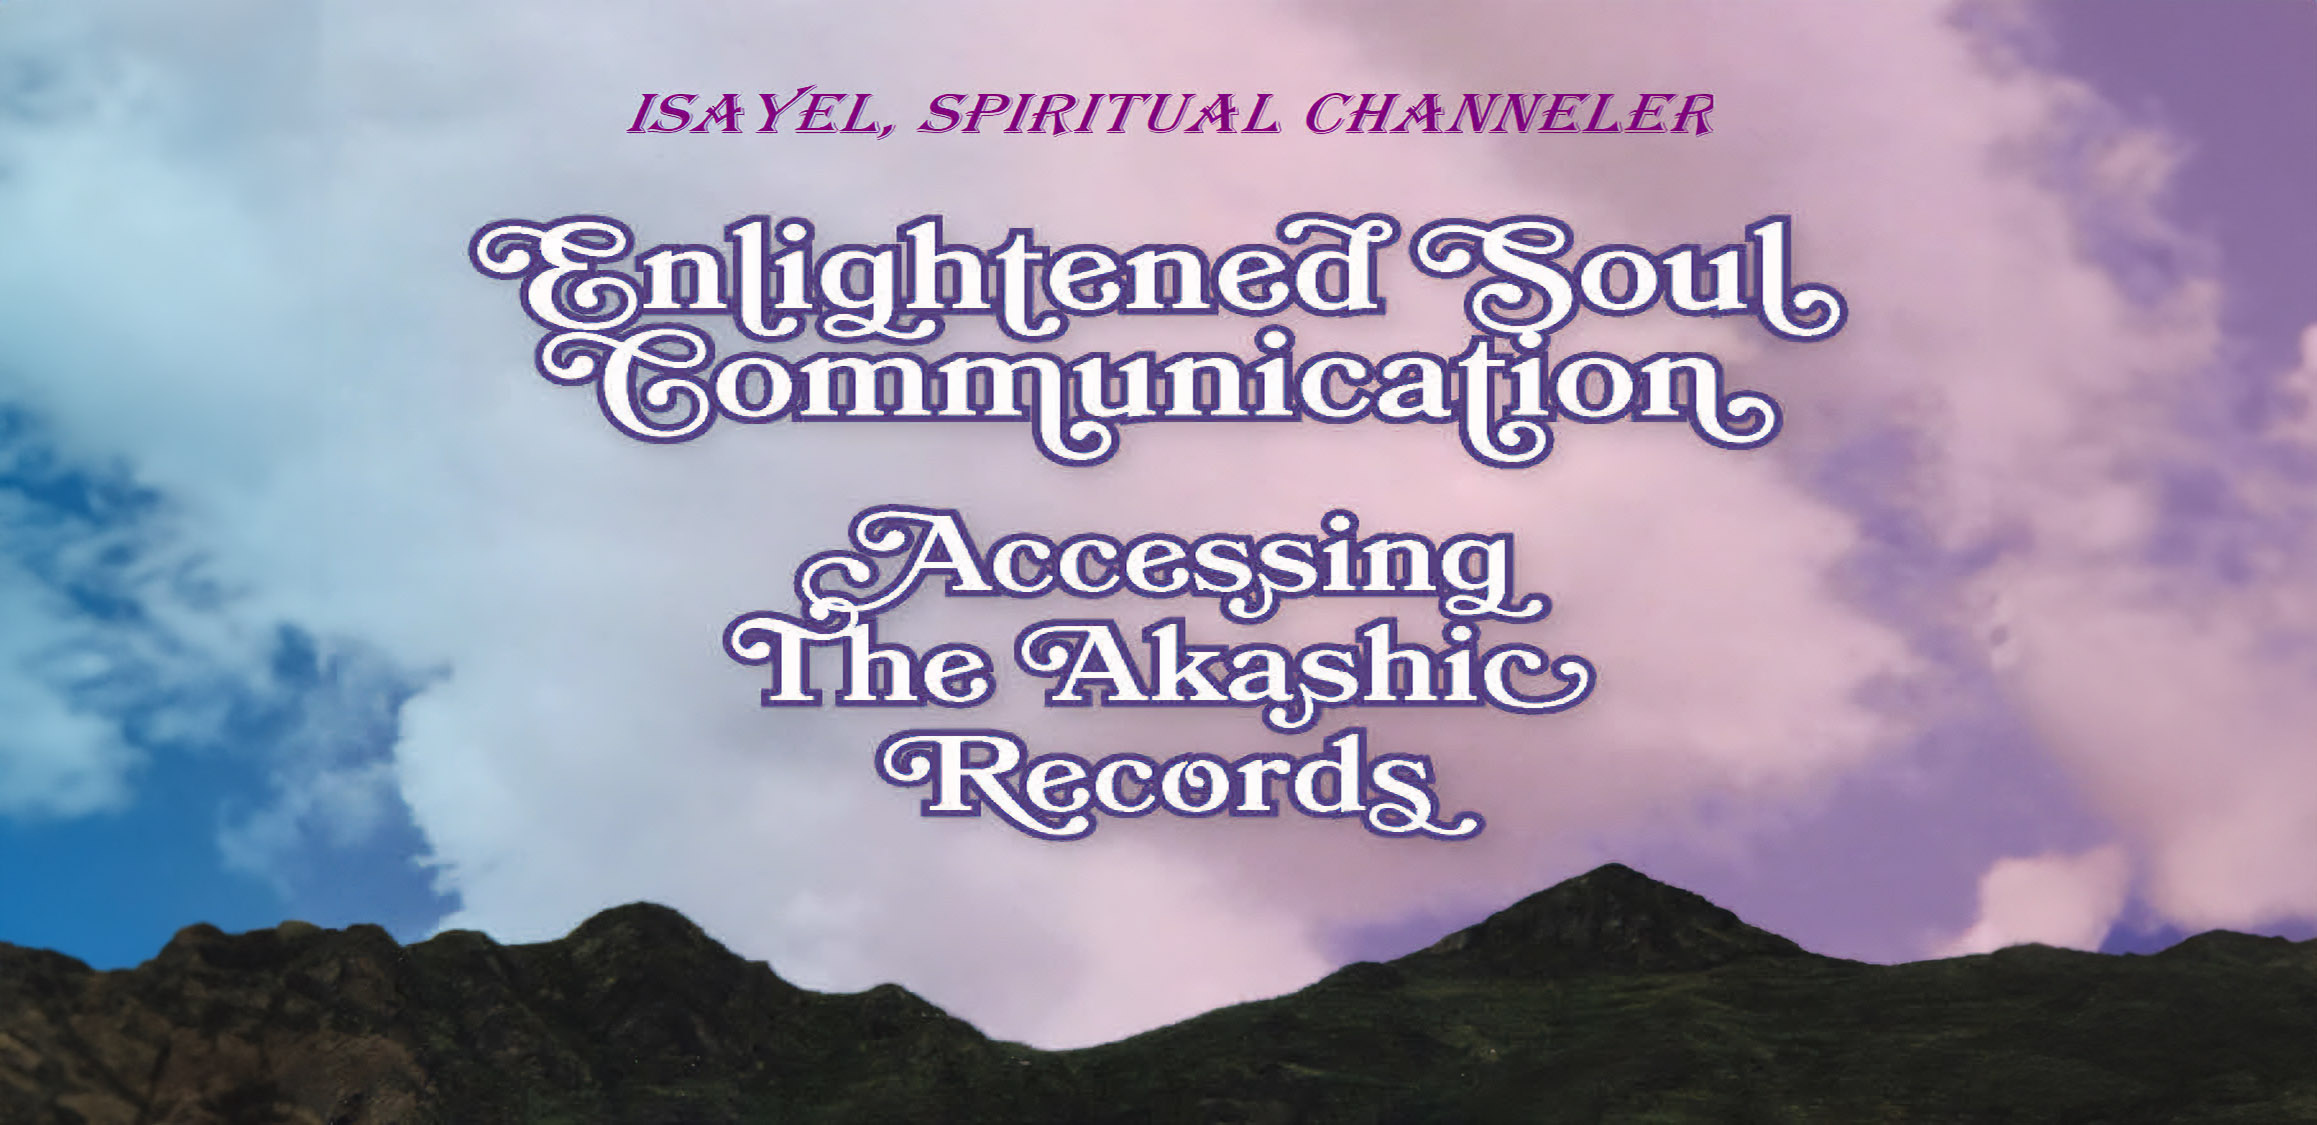 Enlightened Soul Communication